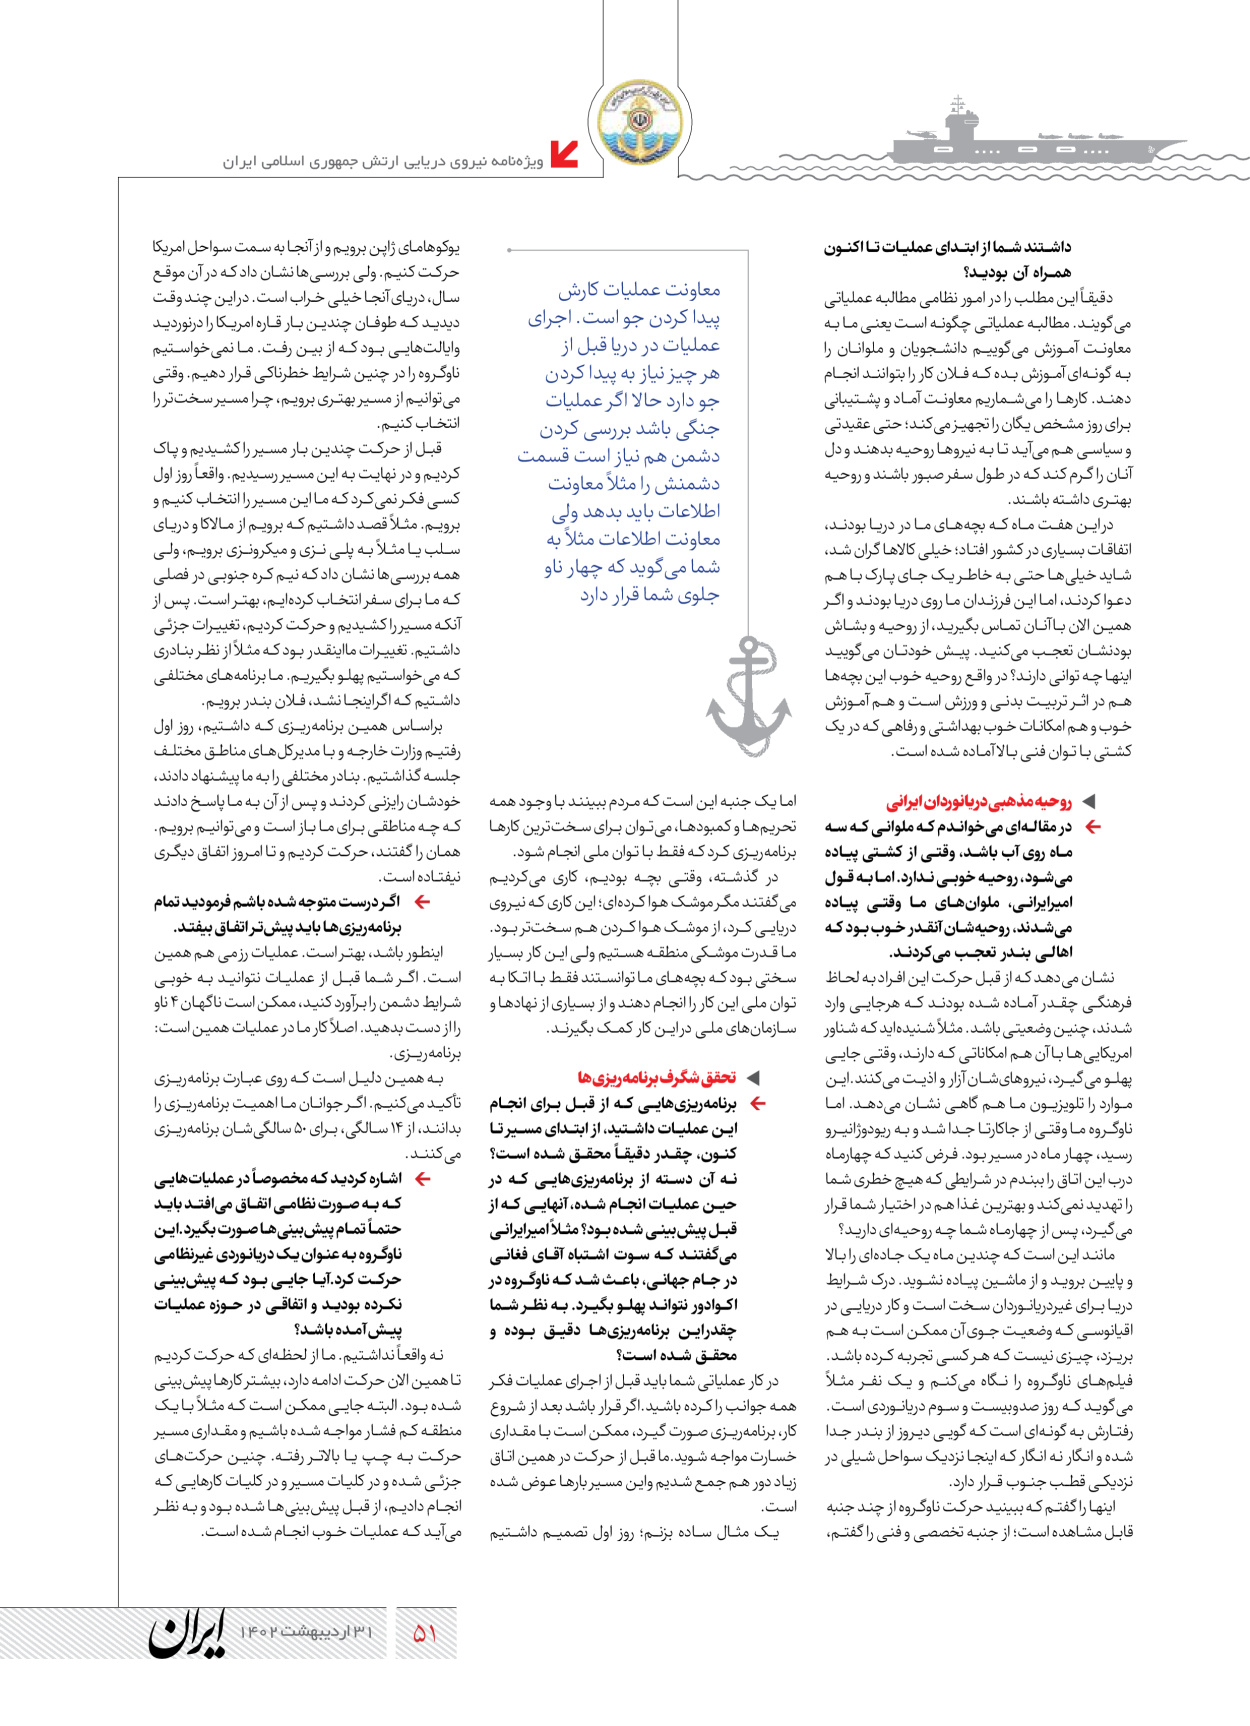 روزنامه ایران - ویژه نامه نیروی دریایی - ۳۱ اردیبهشت ۱۴۰۲ - صفحه ۵۱